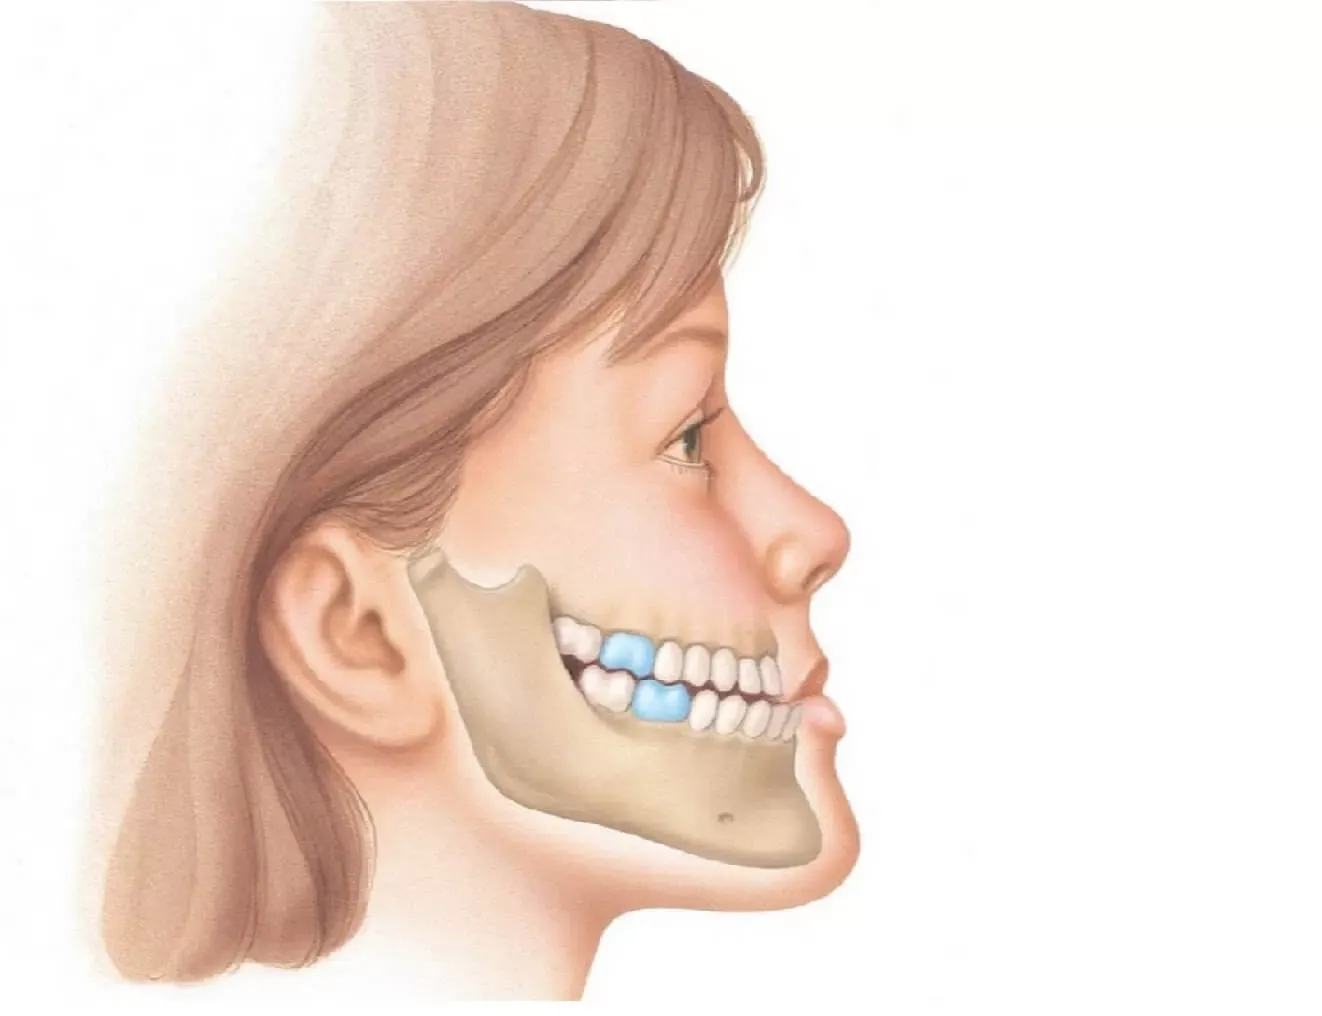 Зубы при закрытом рте. Микрогнатия недоразвитие нижней челюсти. Микрогнатия верхней челюсти. Дистальный прикус (прогнатический прикус). Мезиальный прикус Энгля.